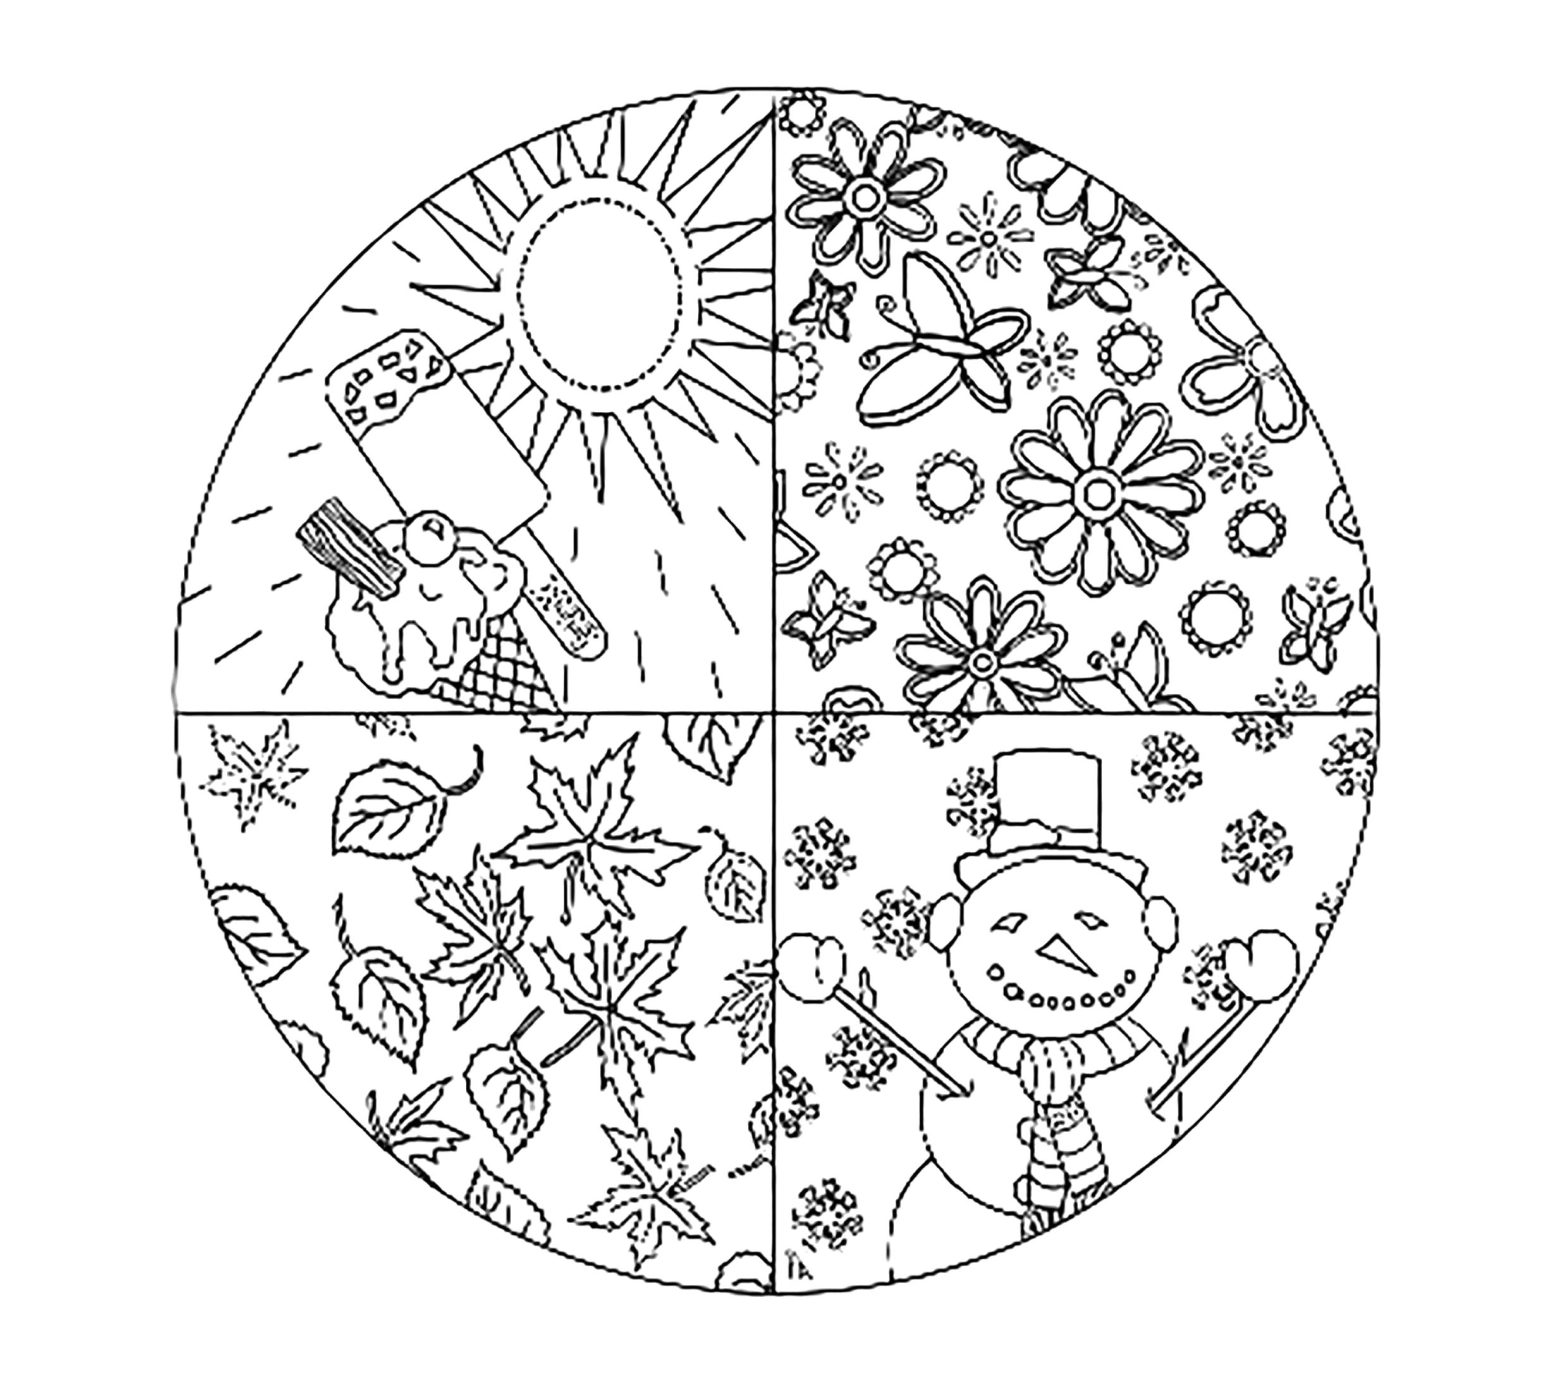 Раскраска круг - геометрическая фигура для развивающей раскраски (круг)